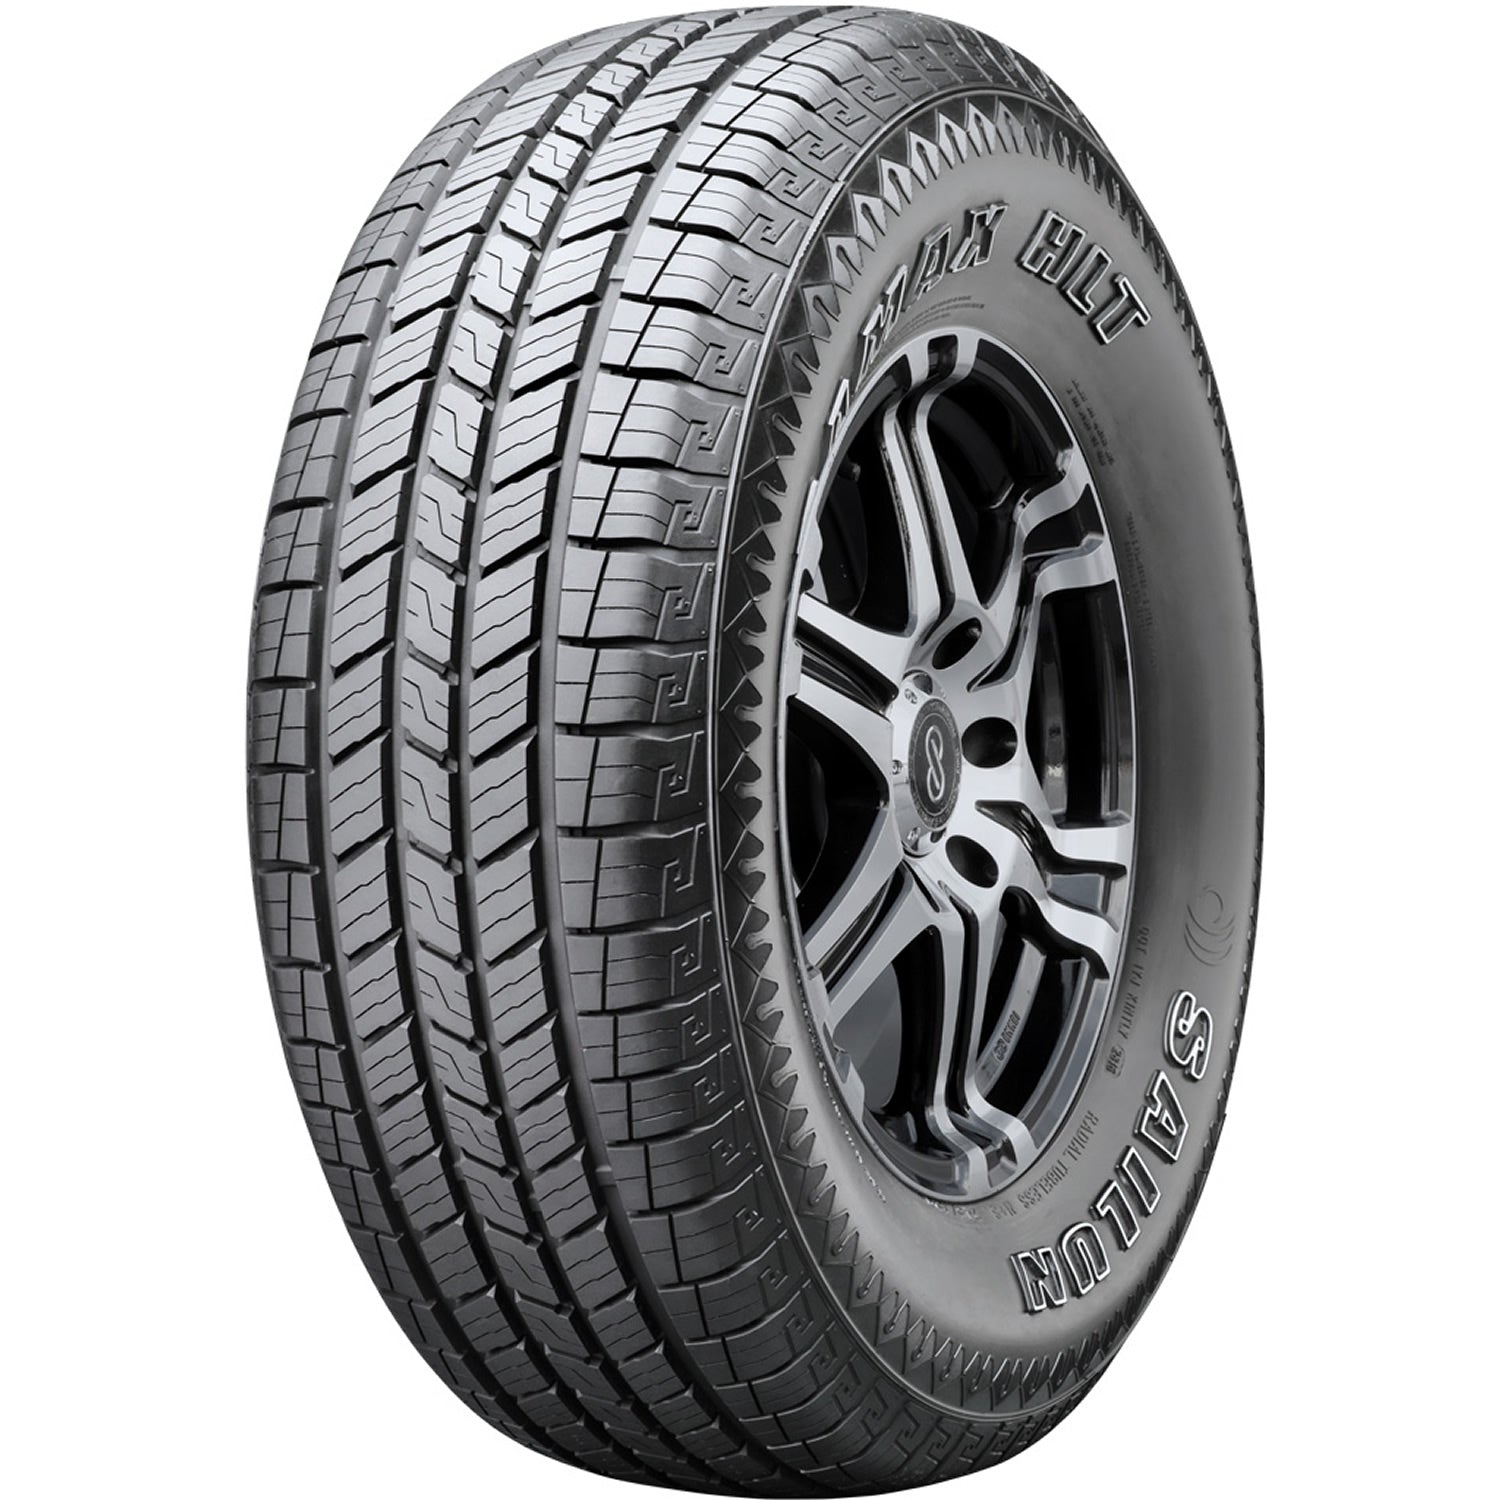 SAILUN TERRAMAX HLT LT245/75R17 (31.5X9.8R 17) Tires